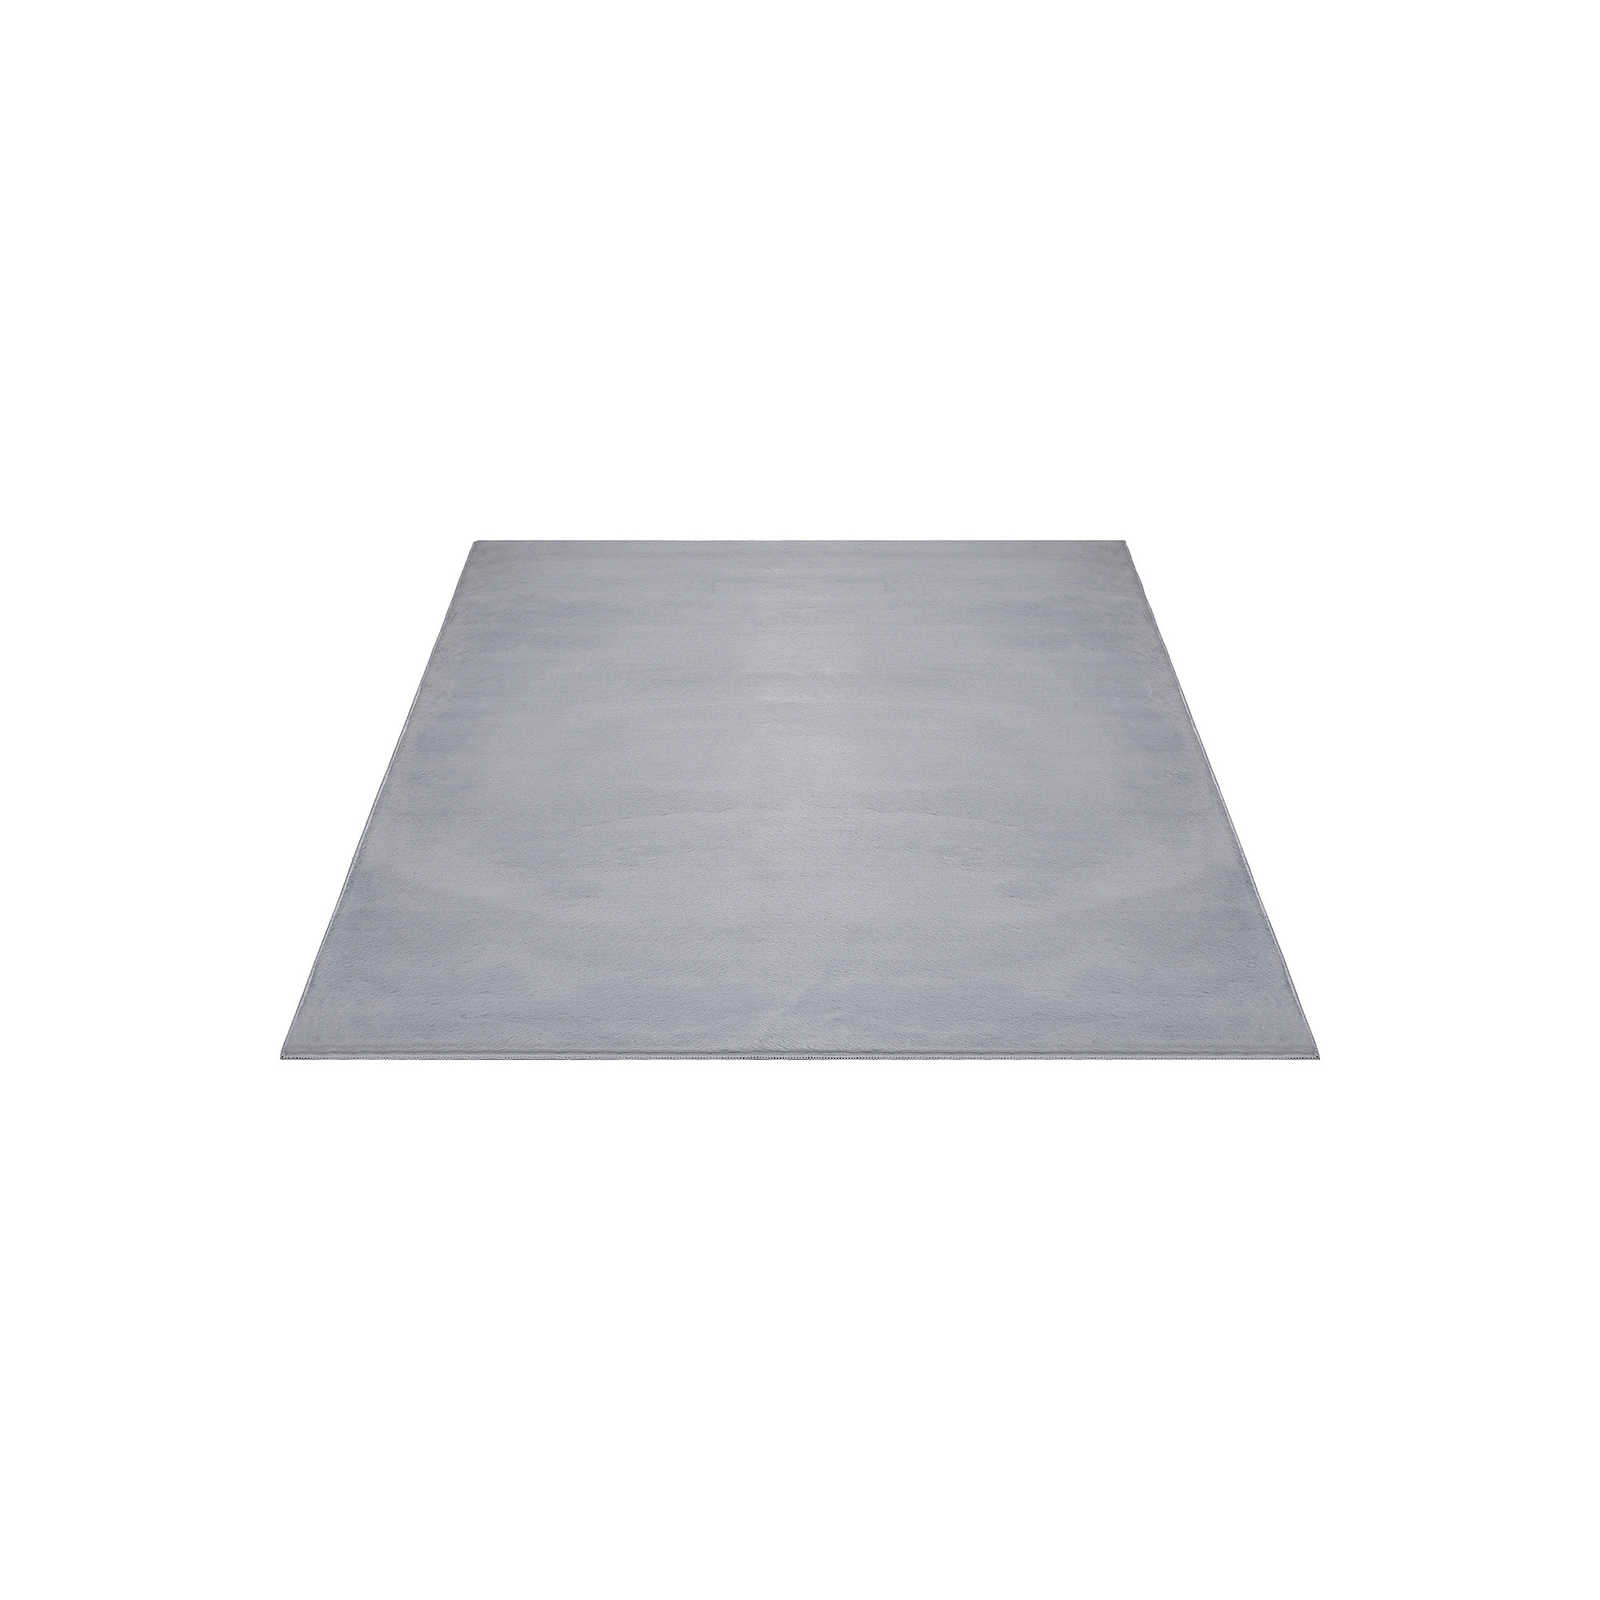 Angenehmer Hochflor Teppich in sanften Grau – 220 x 160 cm
